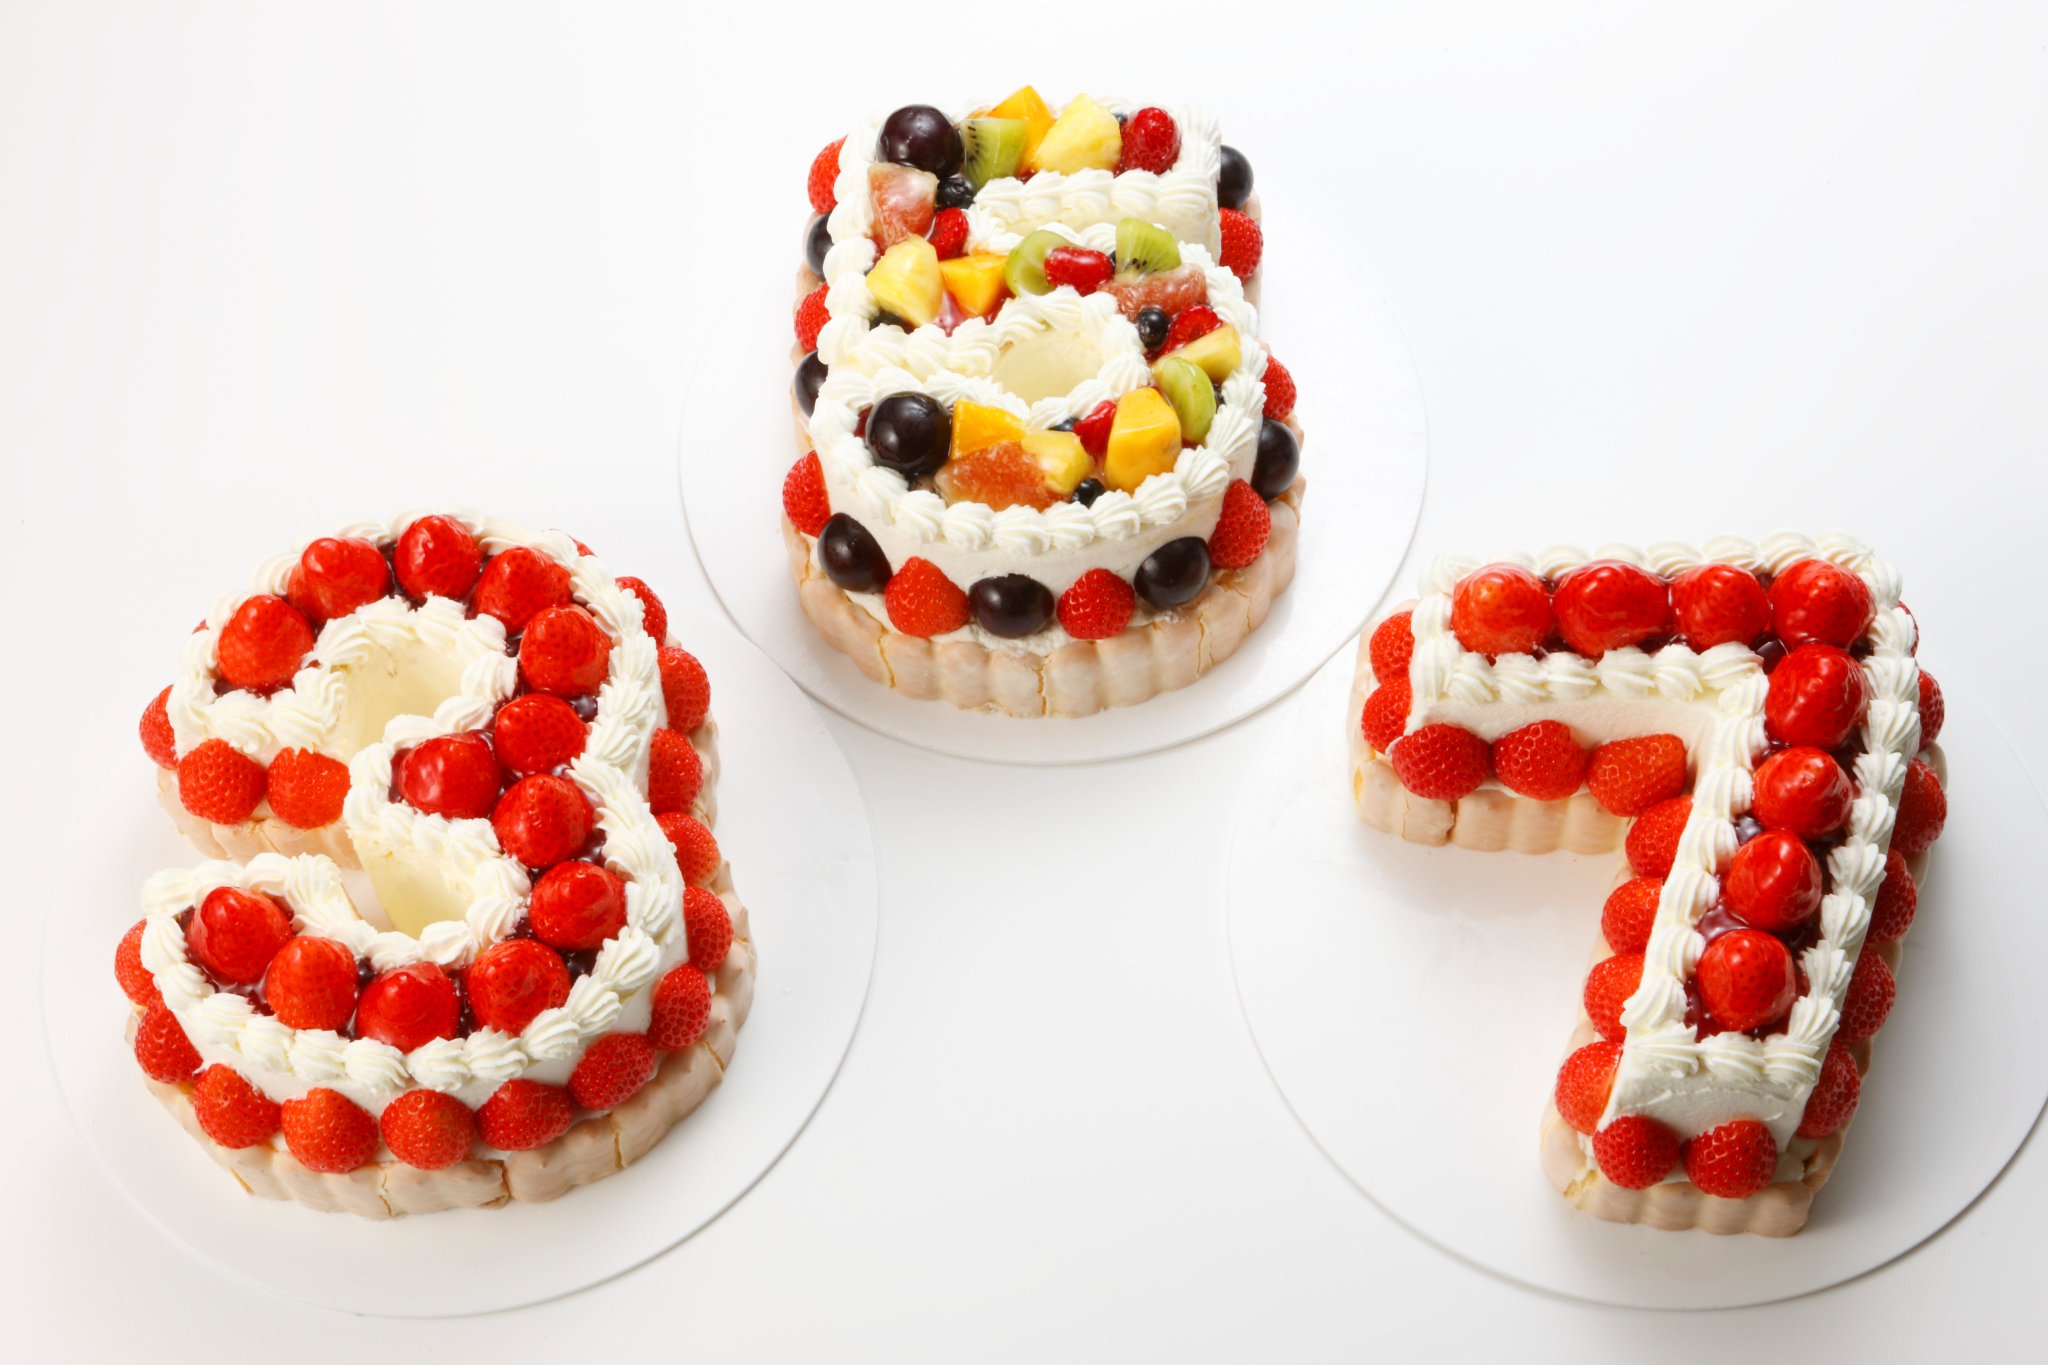 ケーニヒスクローネ 公式 On Twitter 商品のご案内 ケーニヒスクローネでは様々な別注ケーキを取り扱っております このように数字型の ケーキもご用意できます お誕生日や記念日に是非ご利用くださいませ ケーニヒスクローネ Konigskrone クローネ